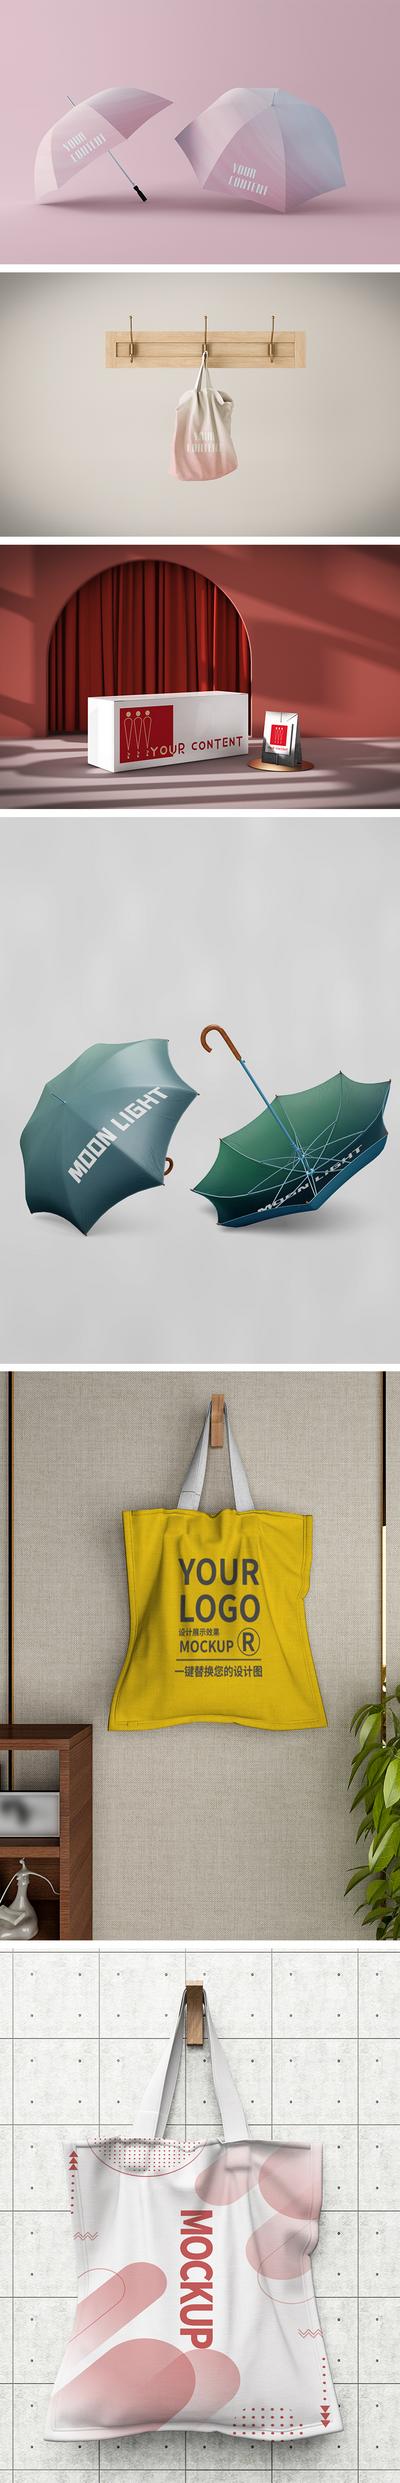 南门网 VI设计 包装设计 样机 大气 时尚 简约 雨伞 帆布袋